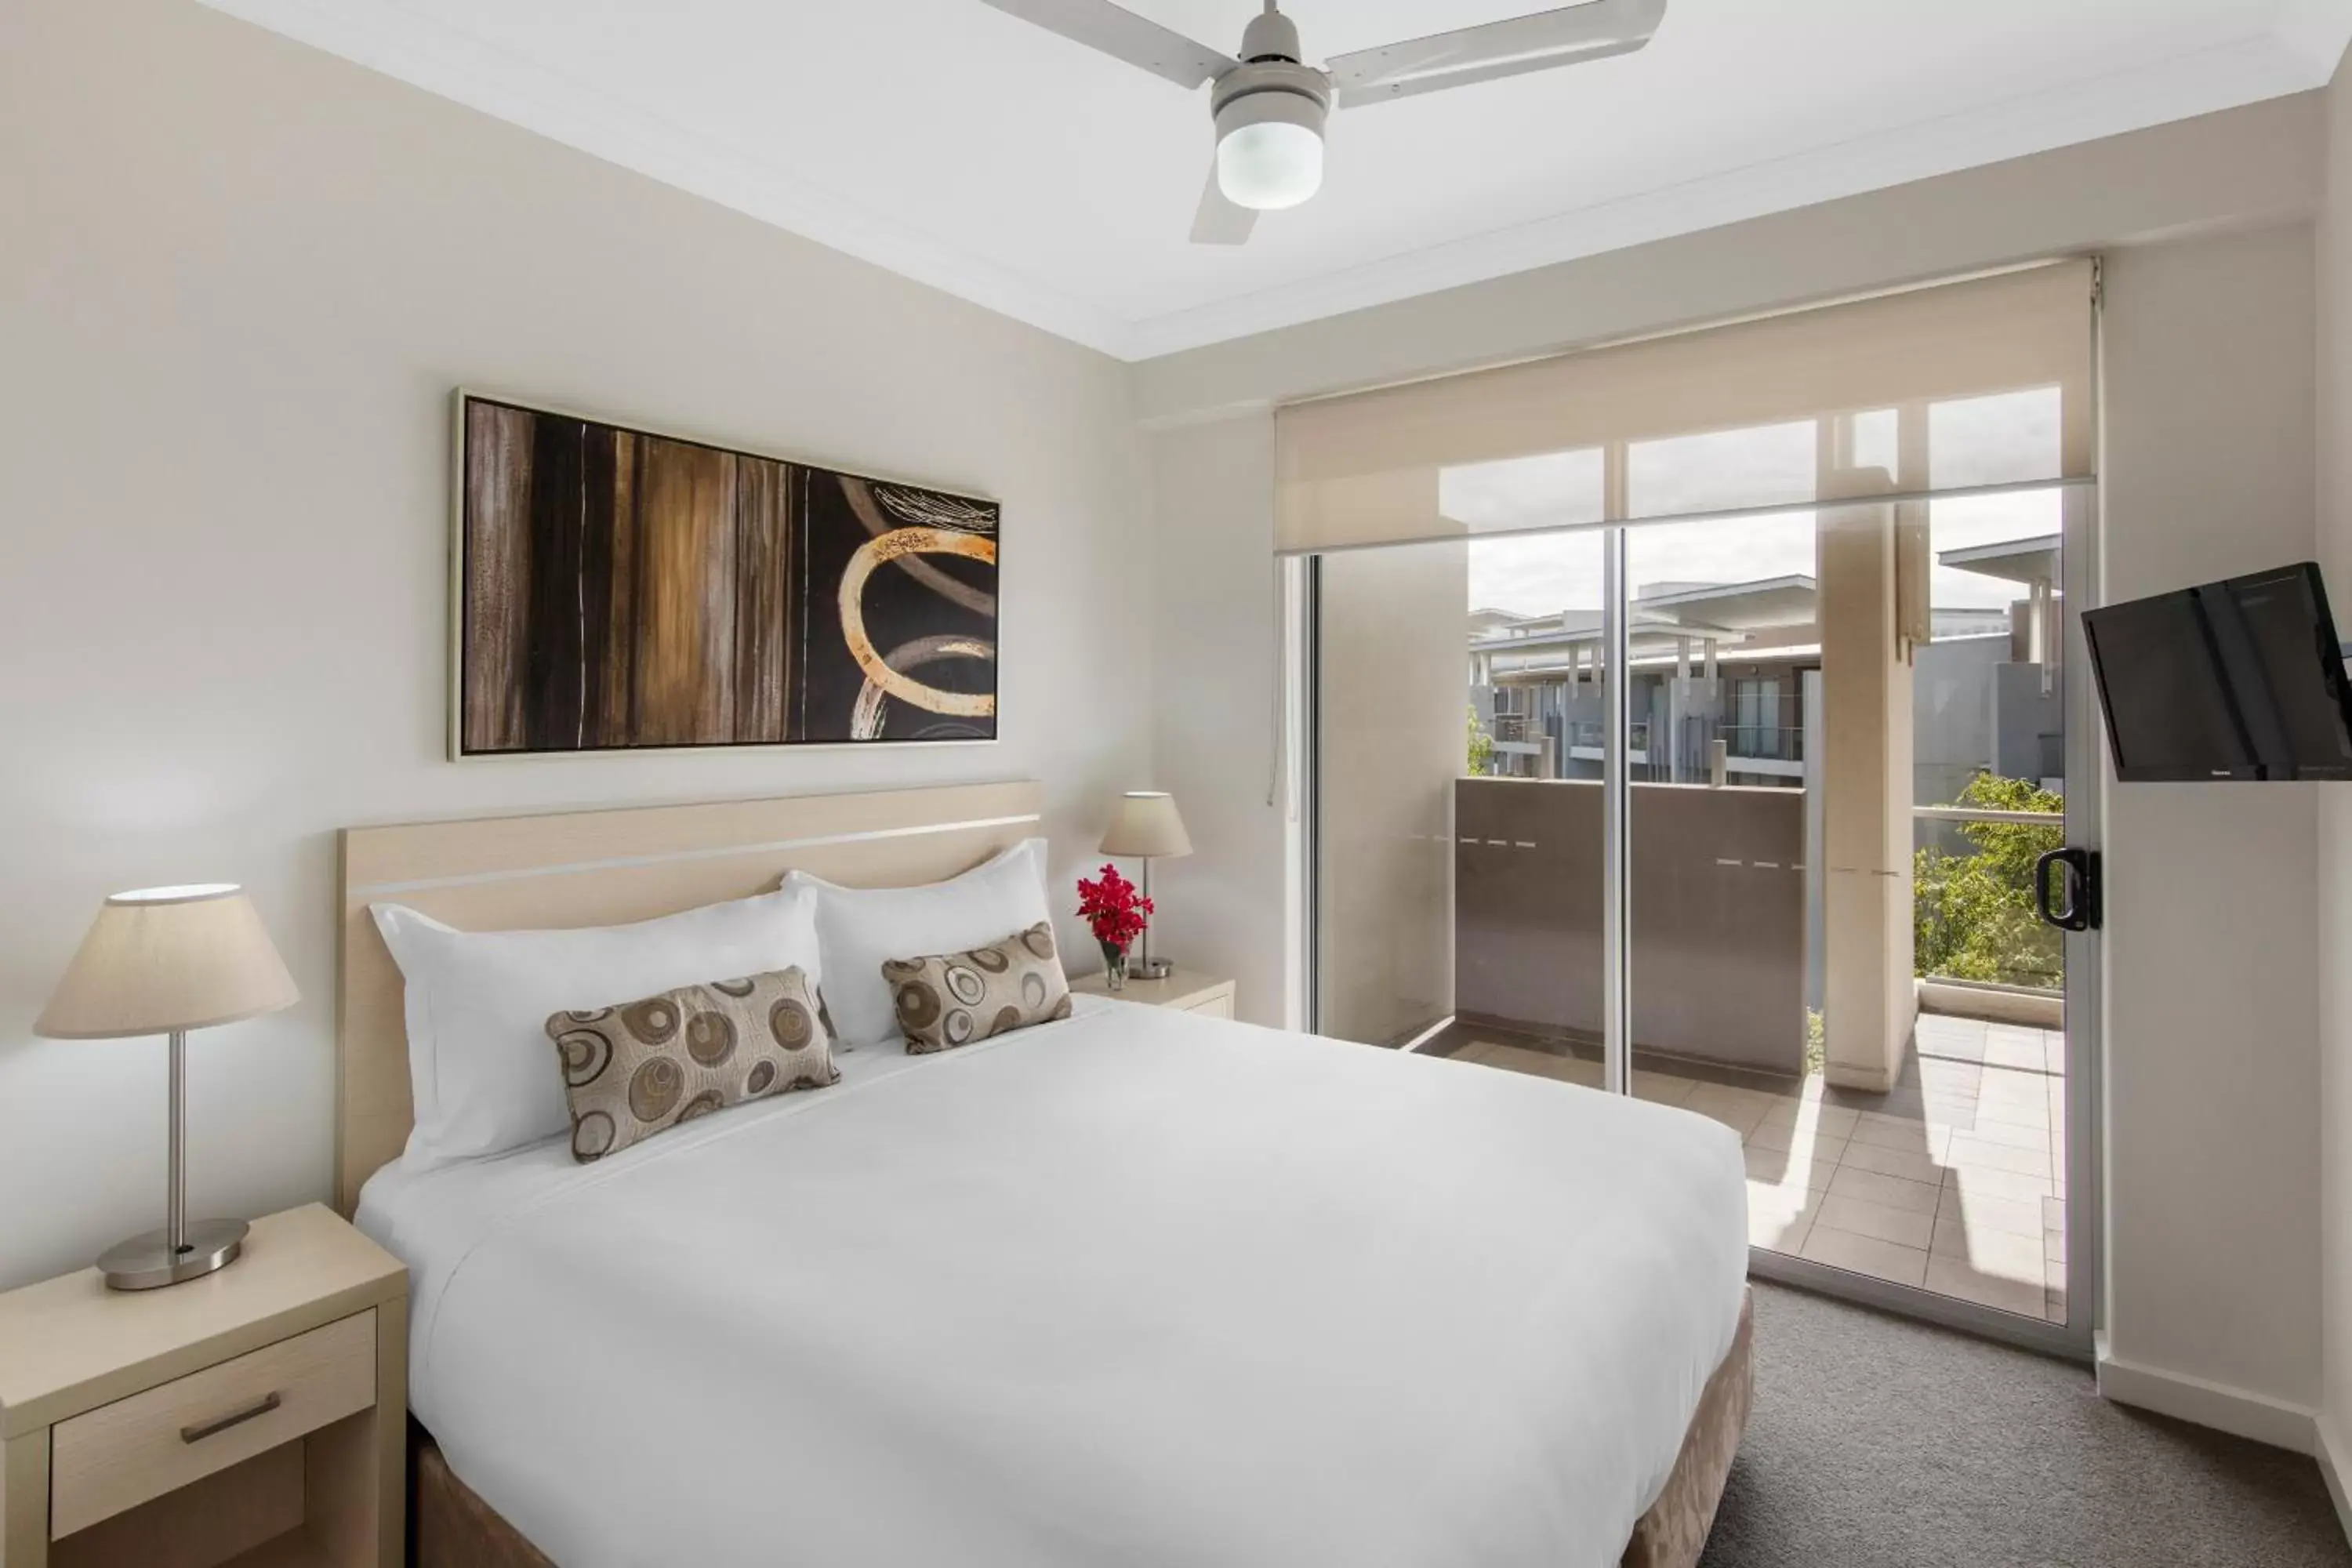 Bedroom, Room Photo in Oaks Brisbane Mews Suites